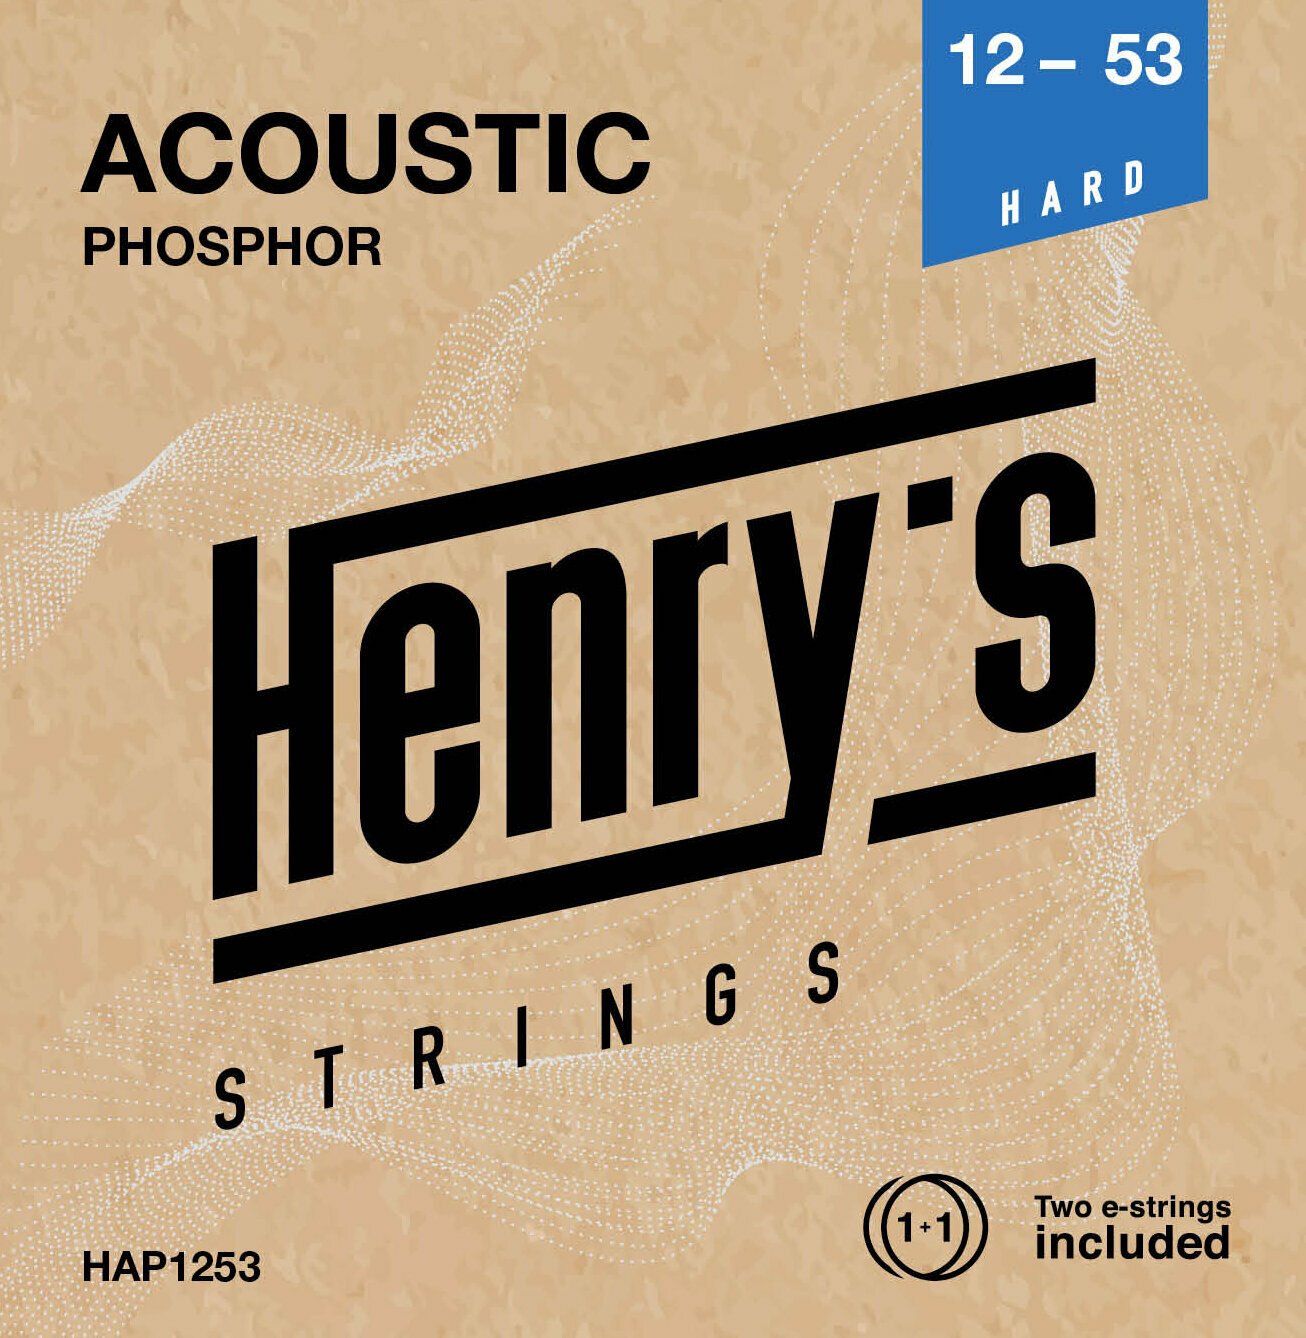 Guitarstrenge Henry's Phosphor 12-53